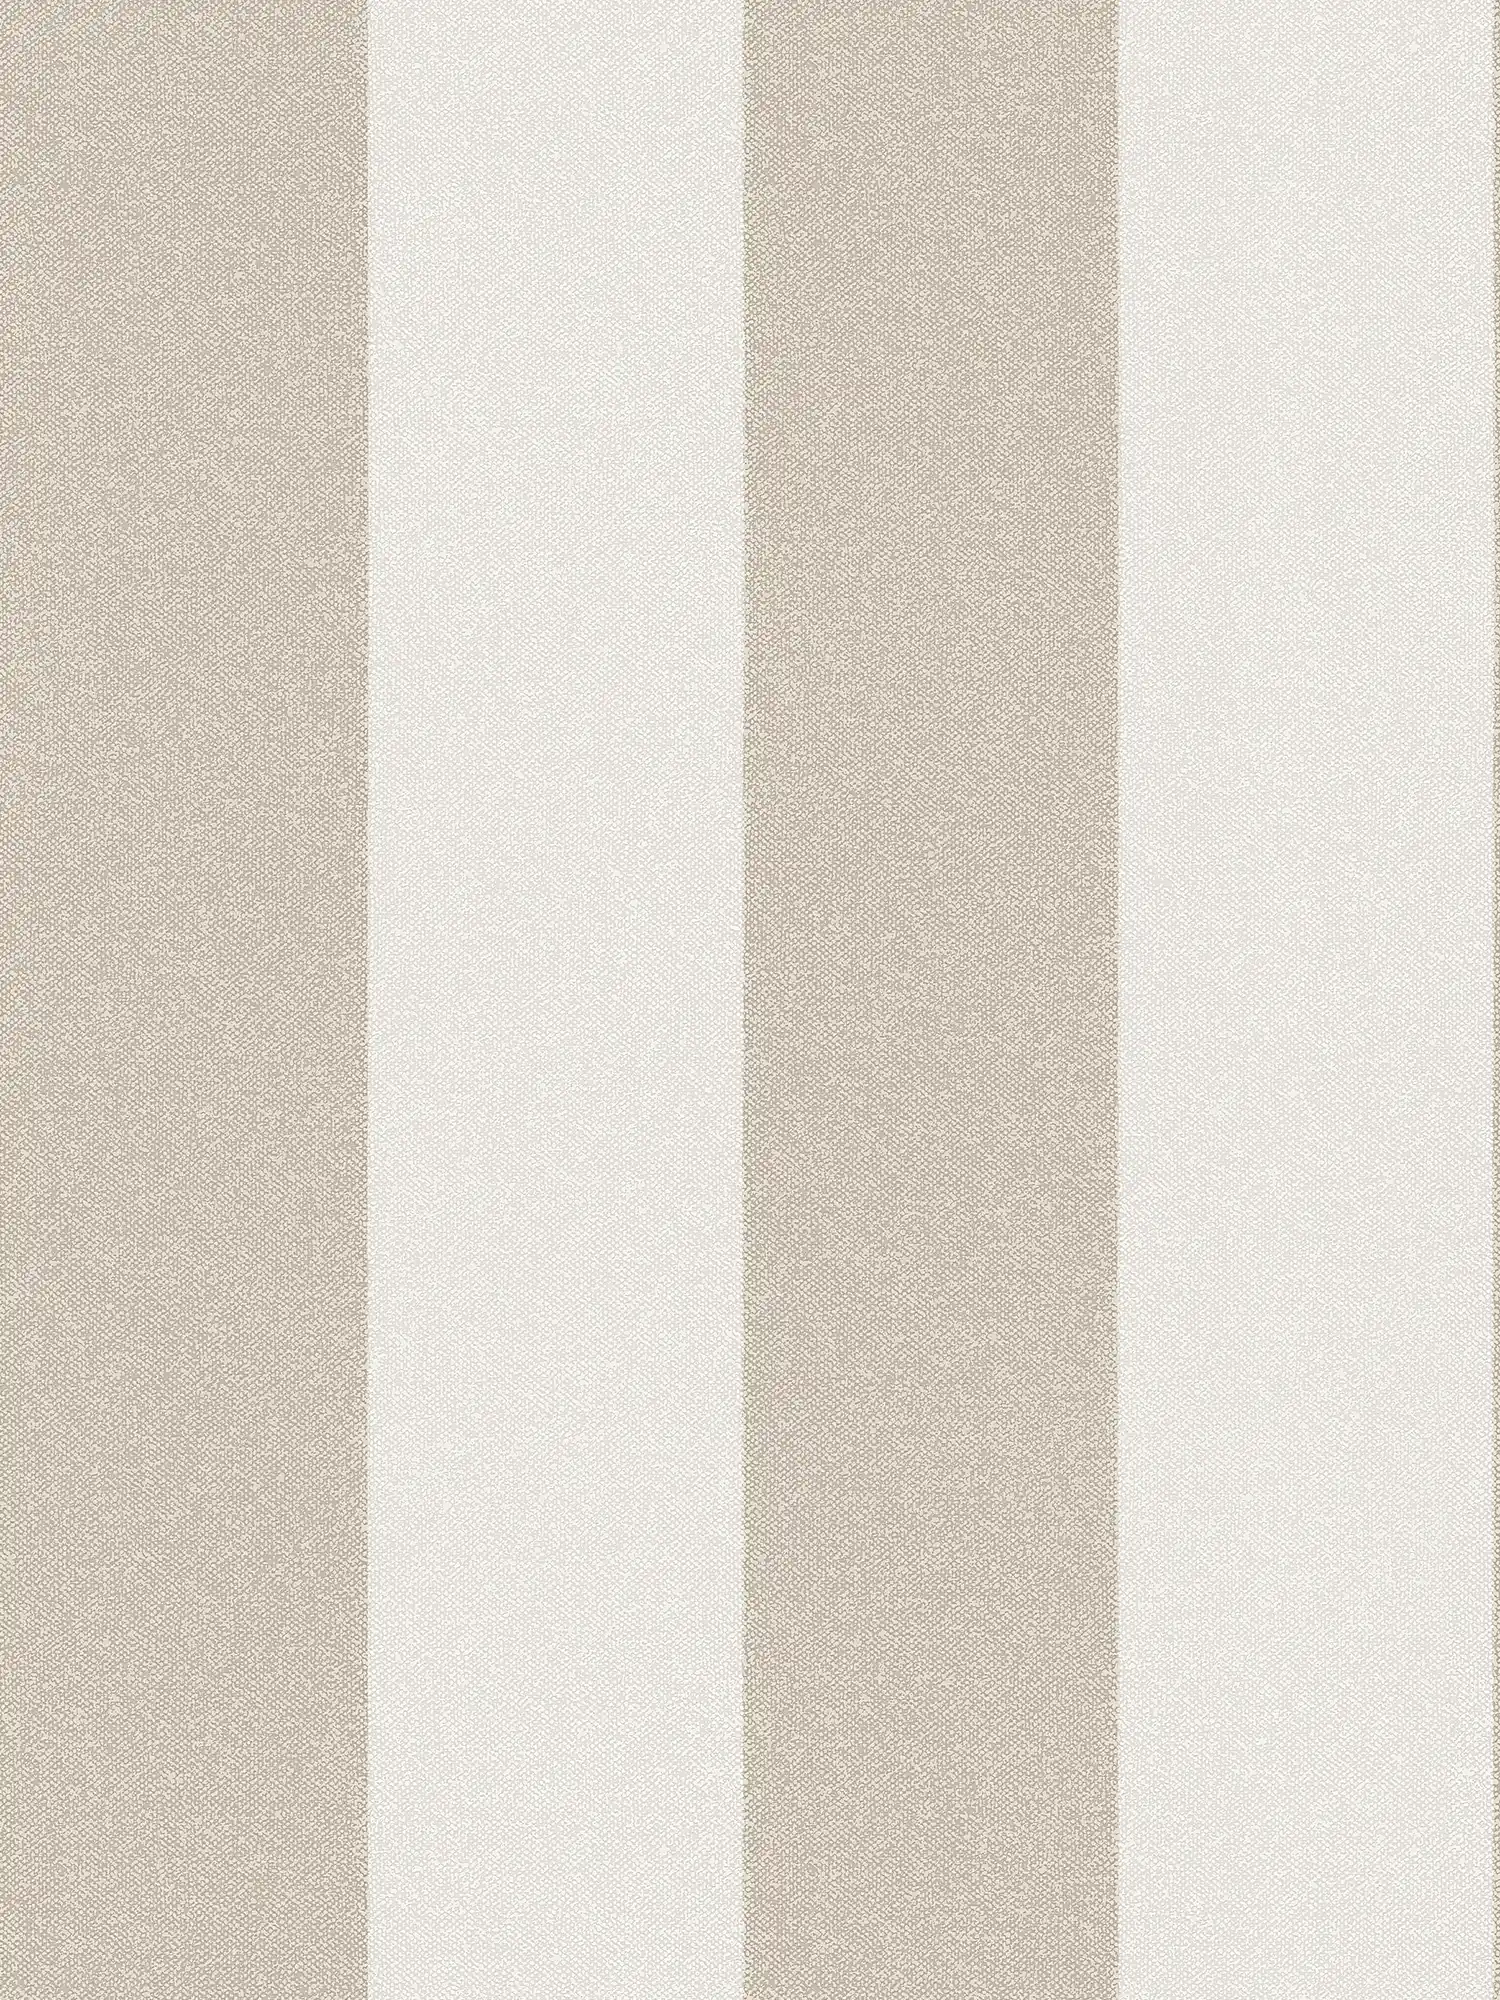         Block stripes wallpaper with linen look - brown, cream, beige
    